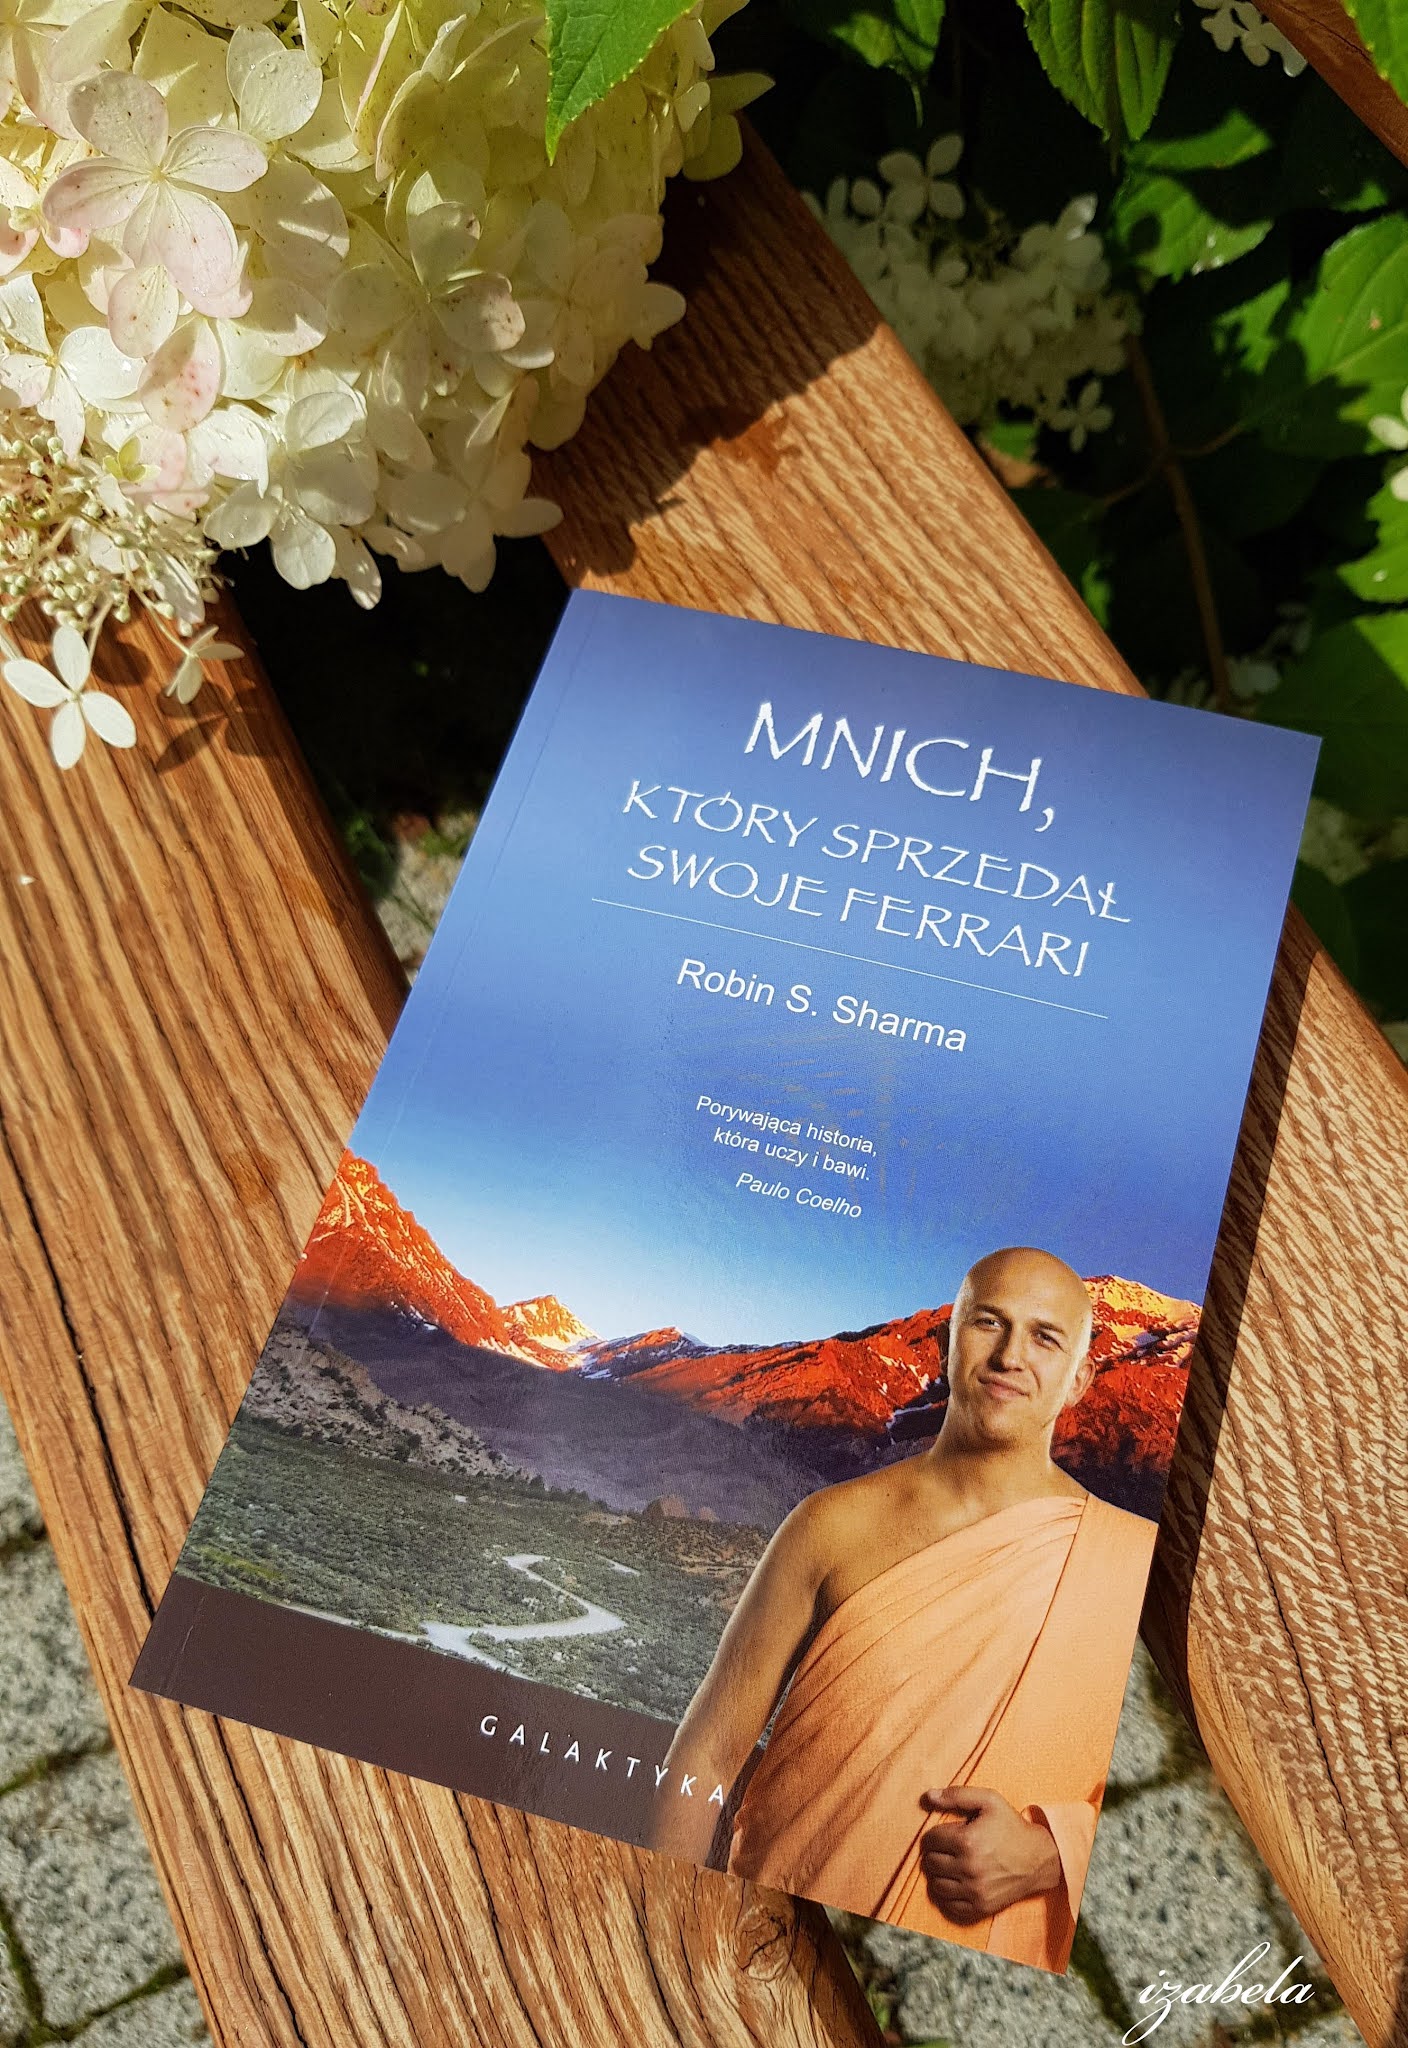 Książka mindfulness Mnich, który sprzedał swoje ferrari